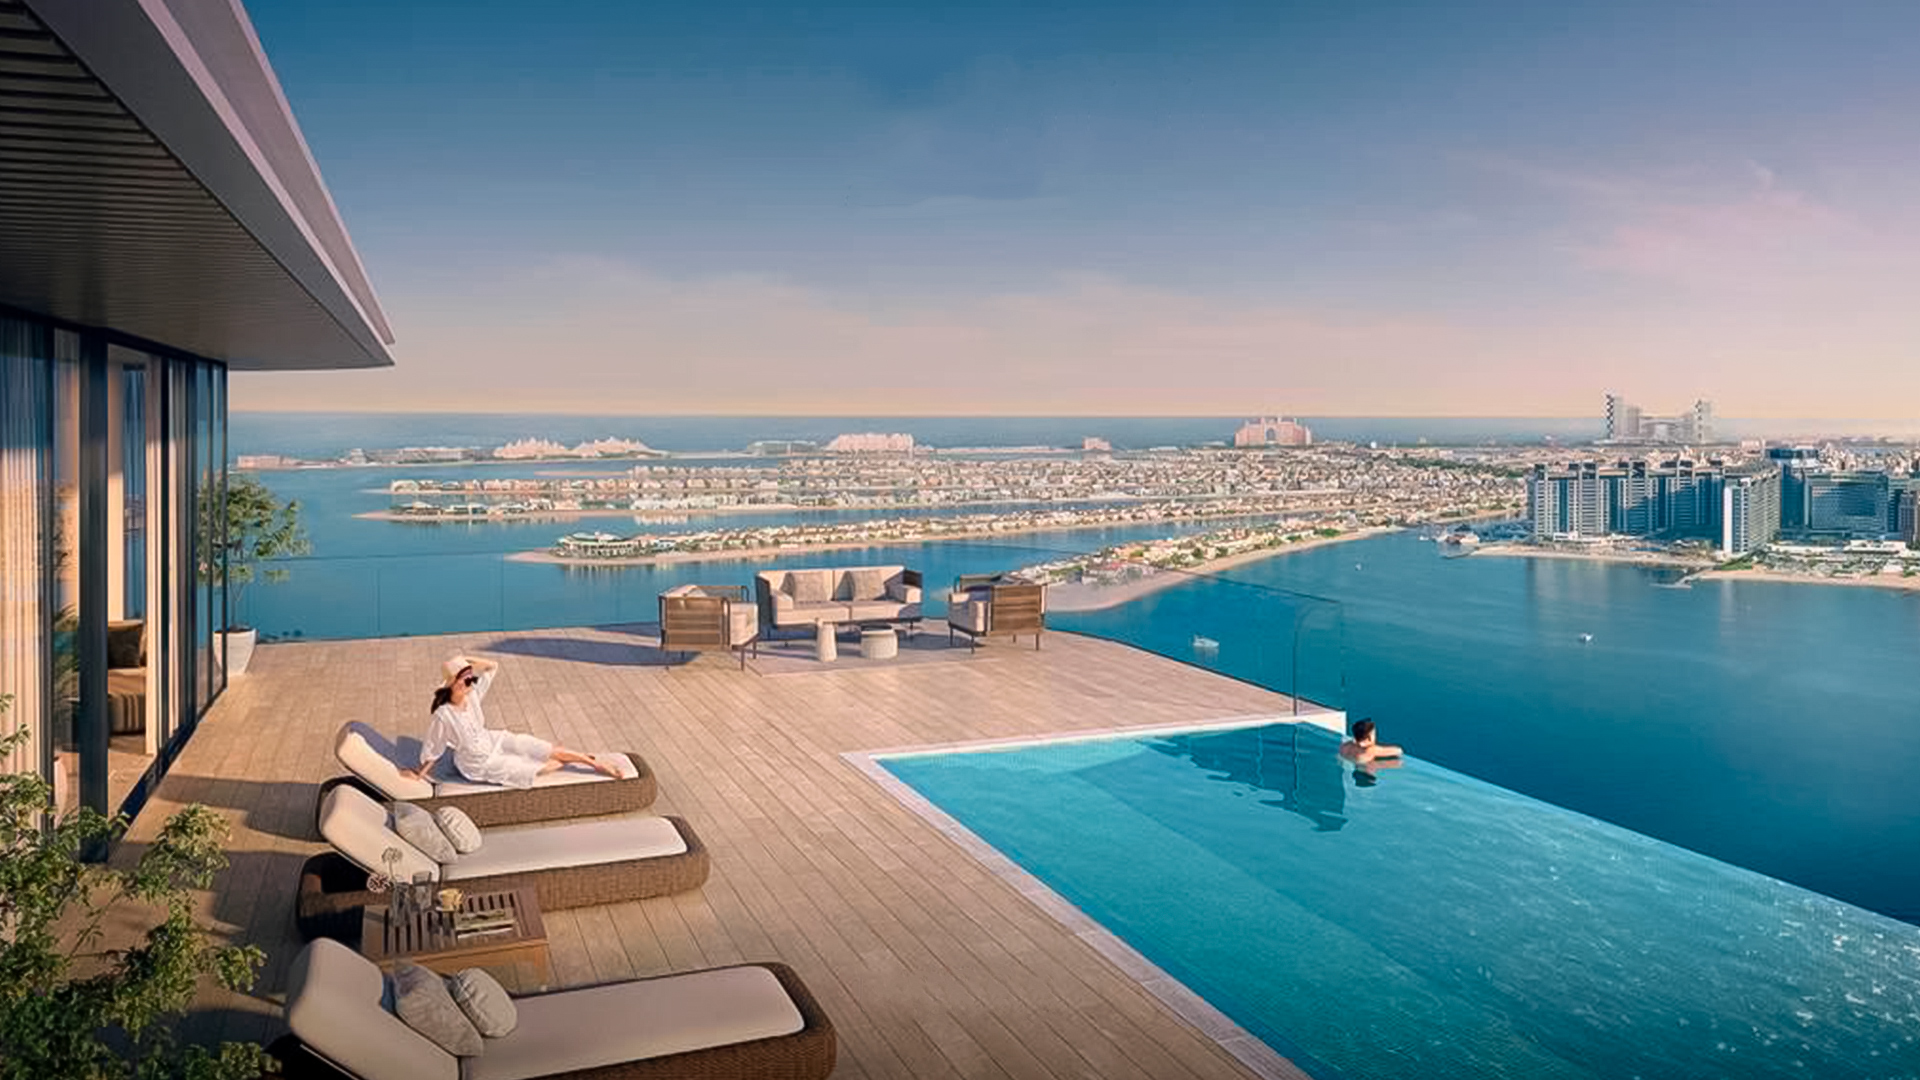 SEAPOINT RESIDENCES by Emaar Properties in Emaar beachfront, Dubai, UAE5